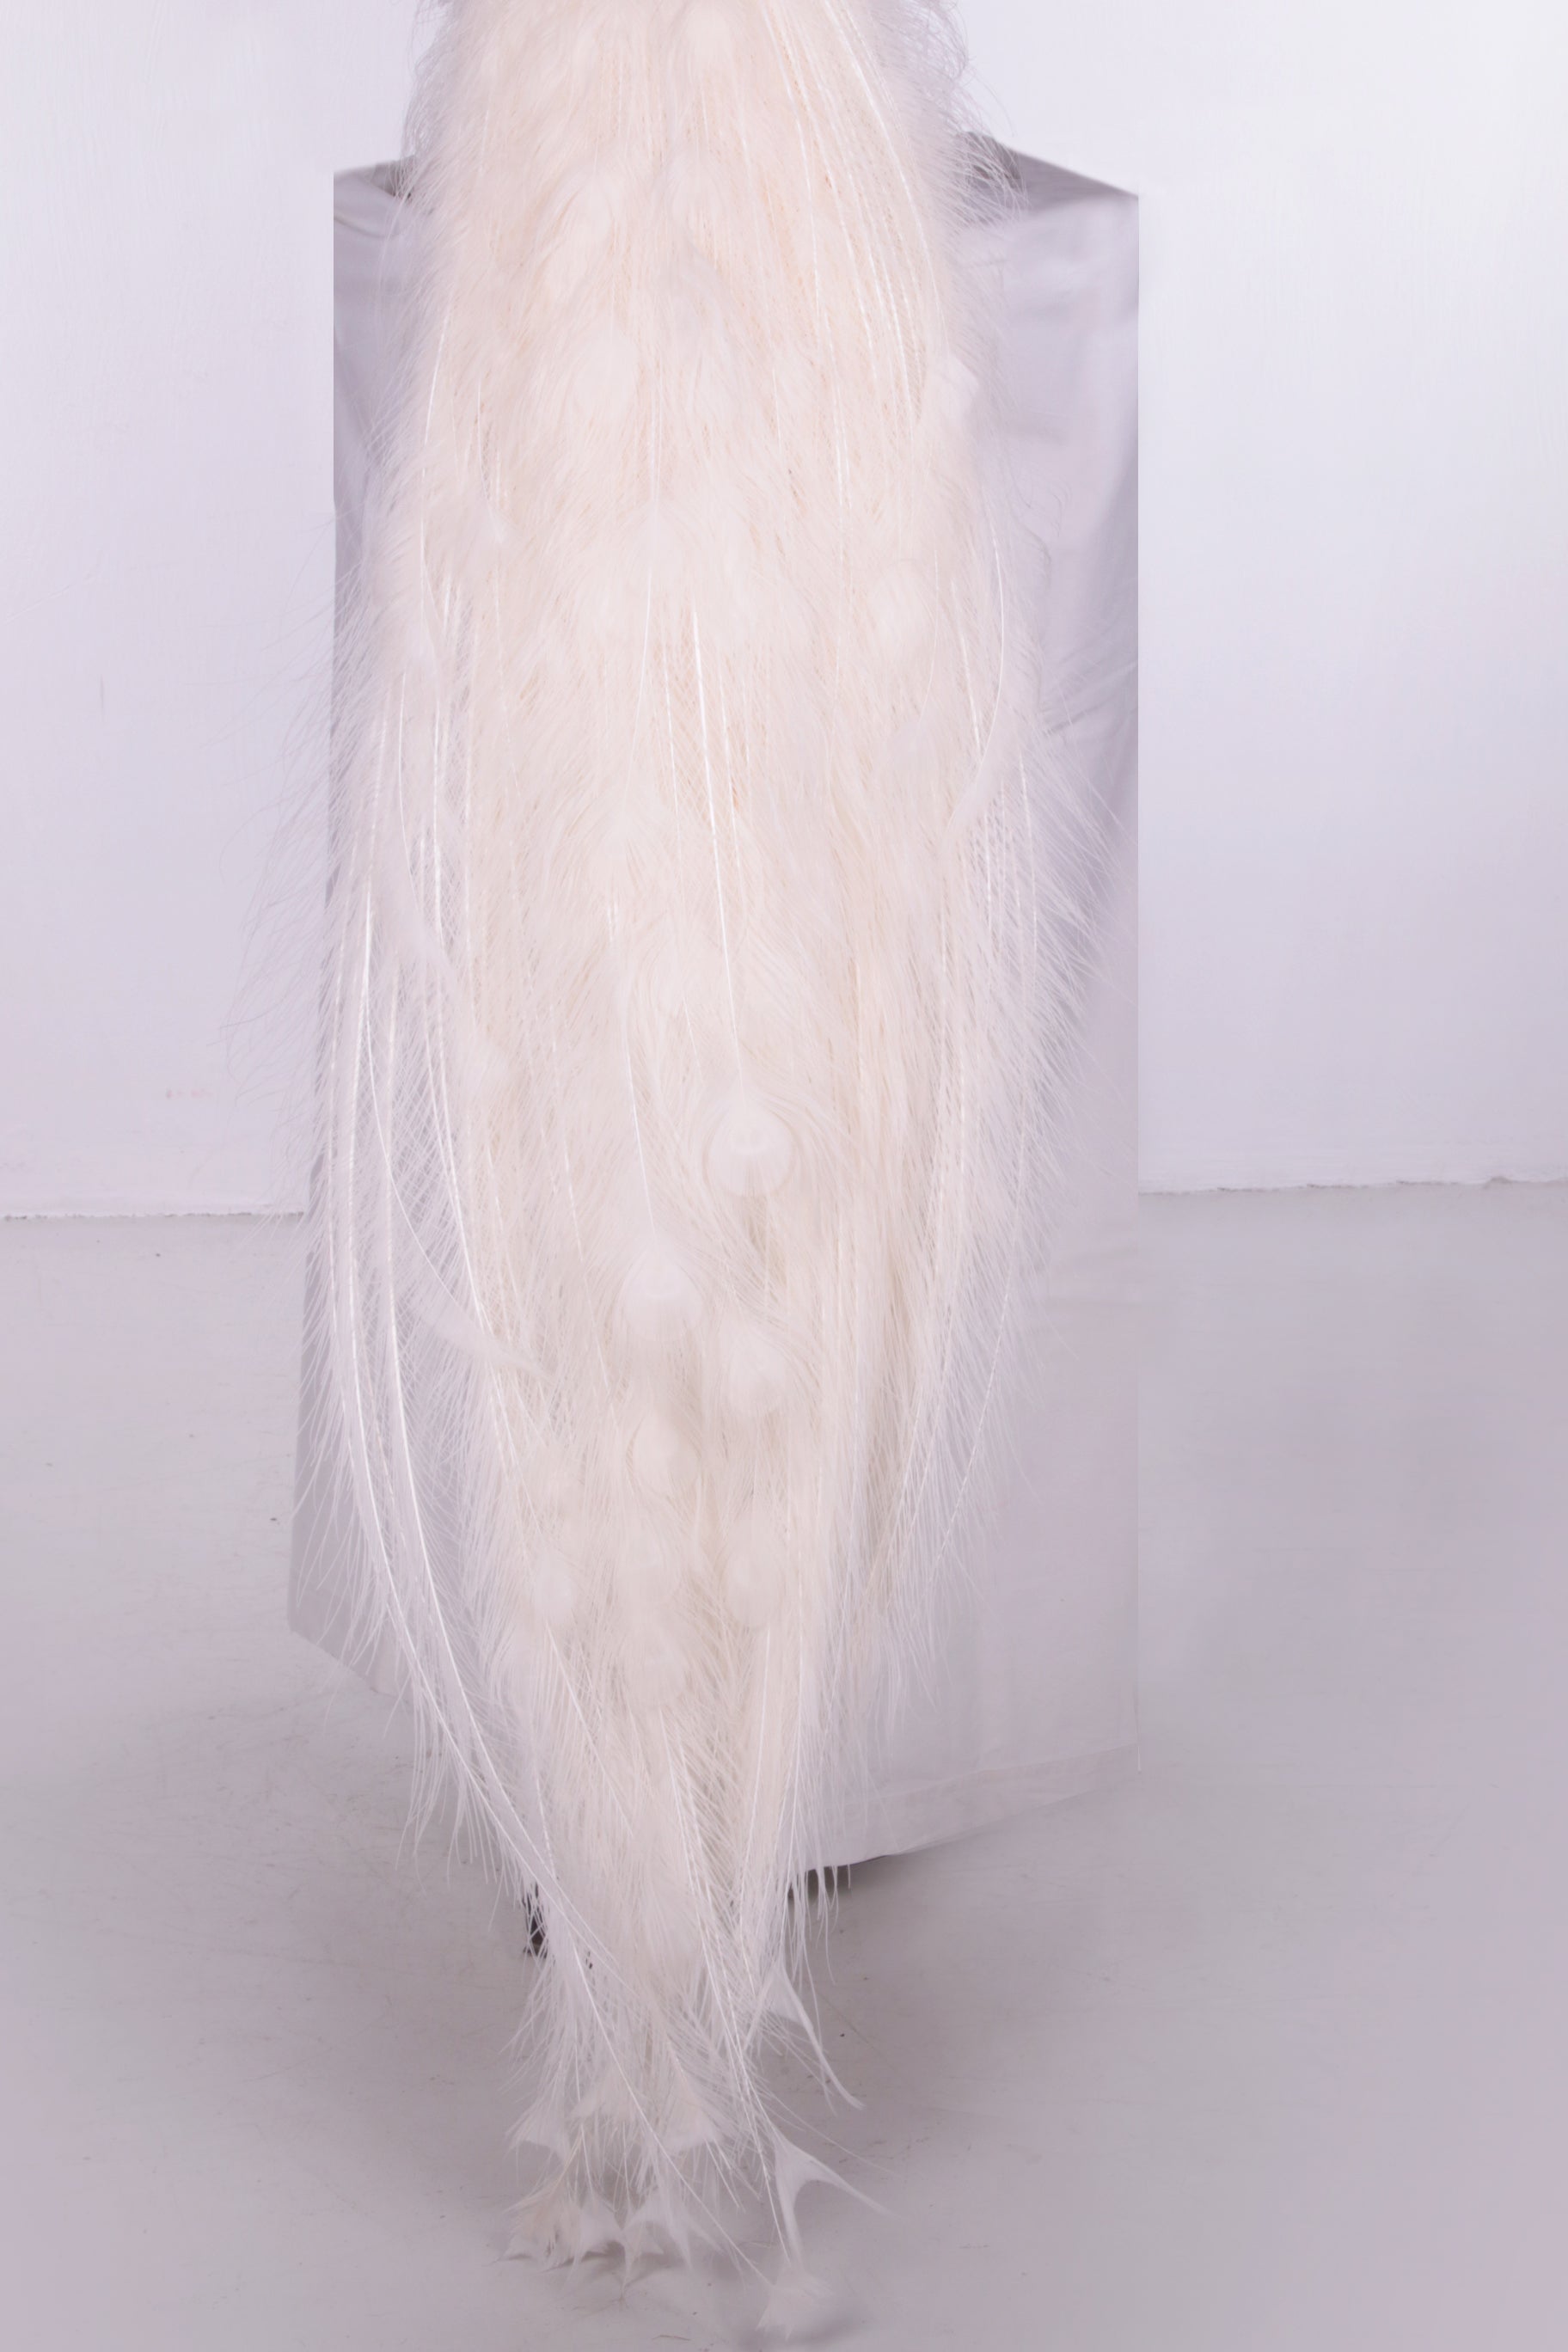 Mooie Sierlijke Opgezette witte pauw staart alleen